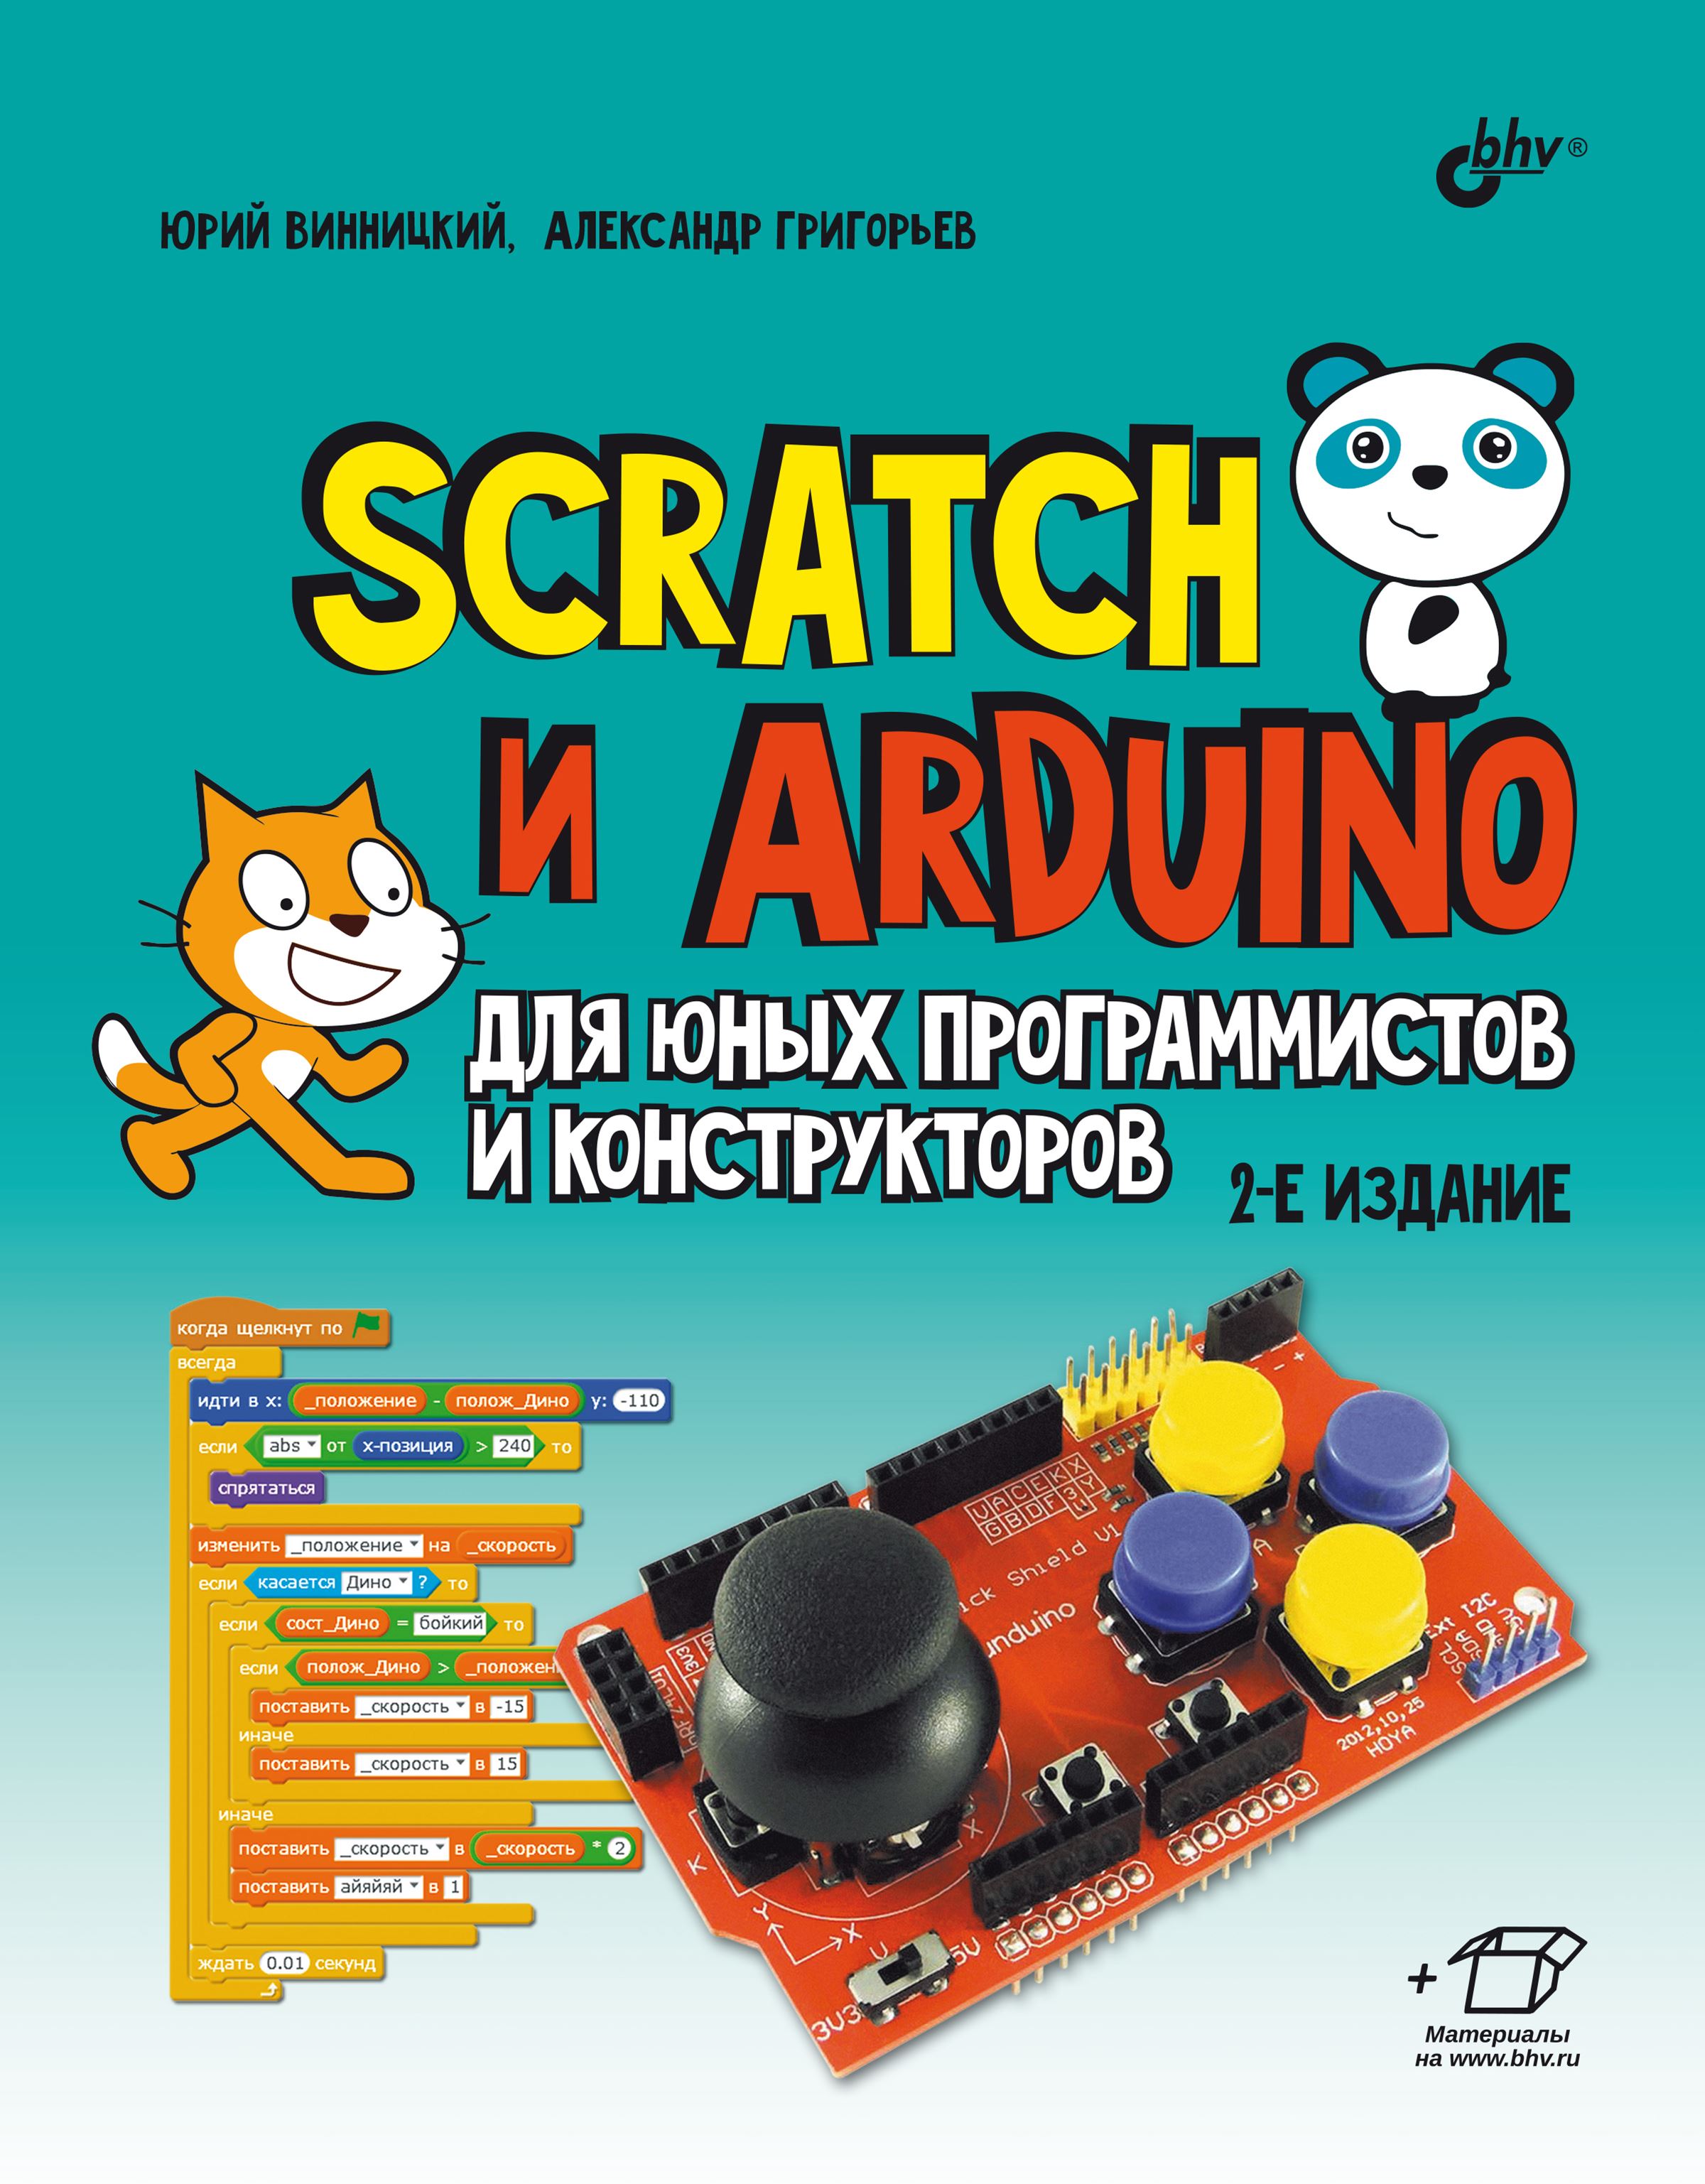 Scratch  Arduino     ,  ,  , - ()